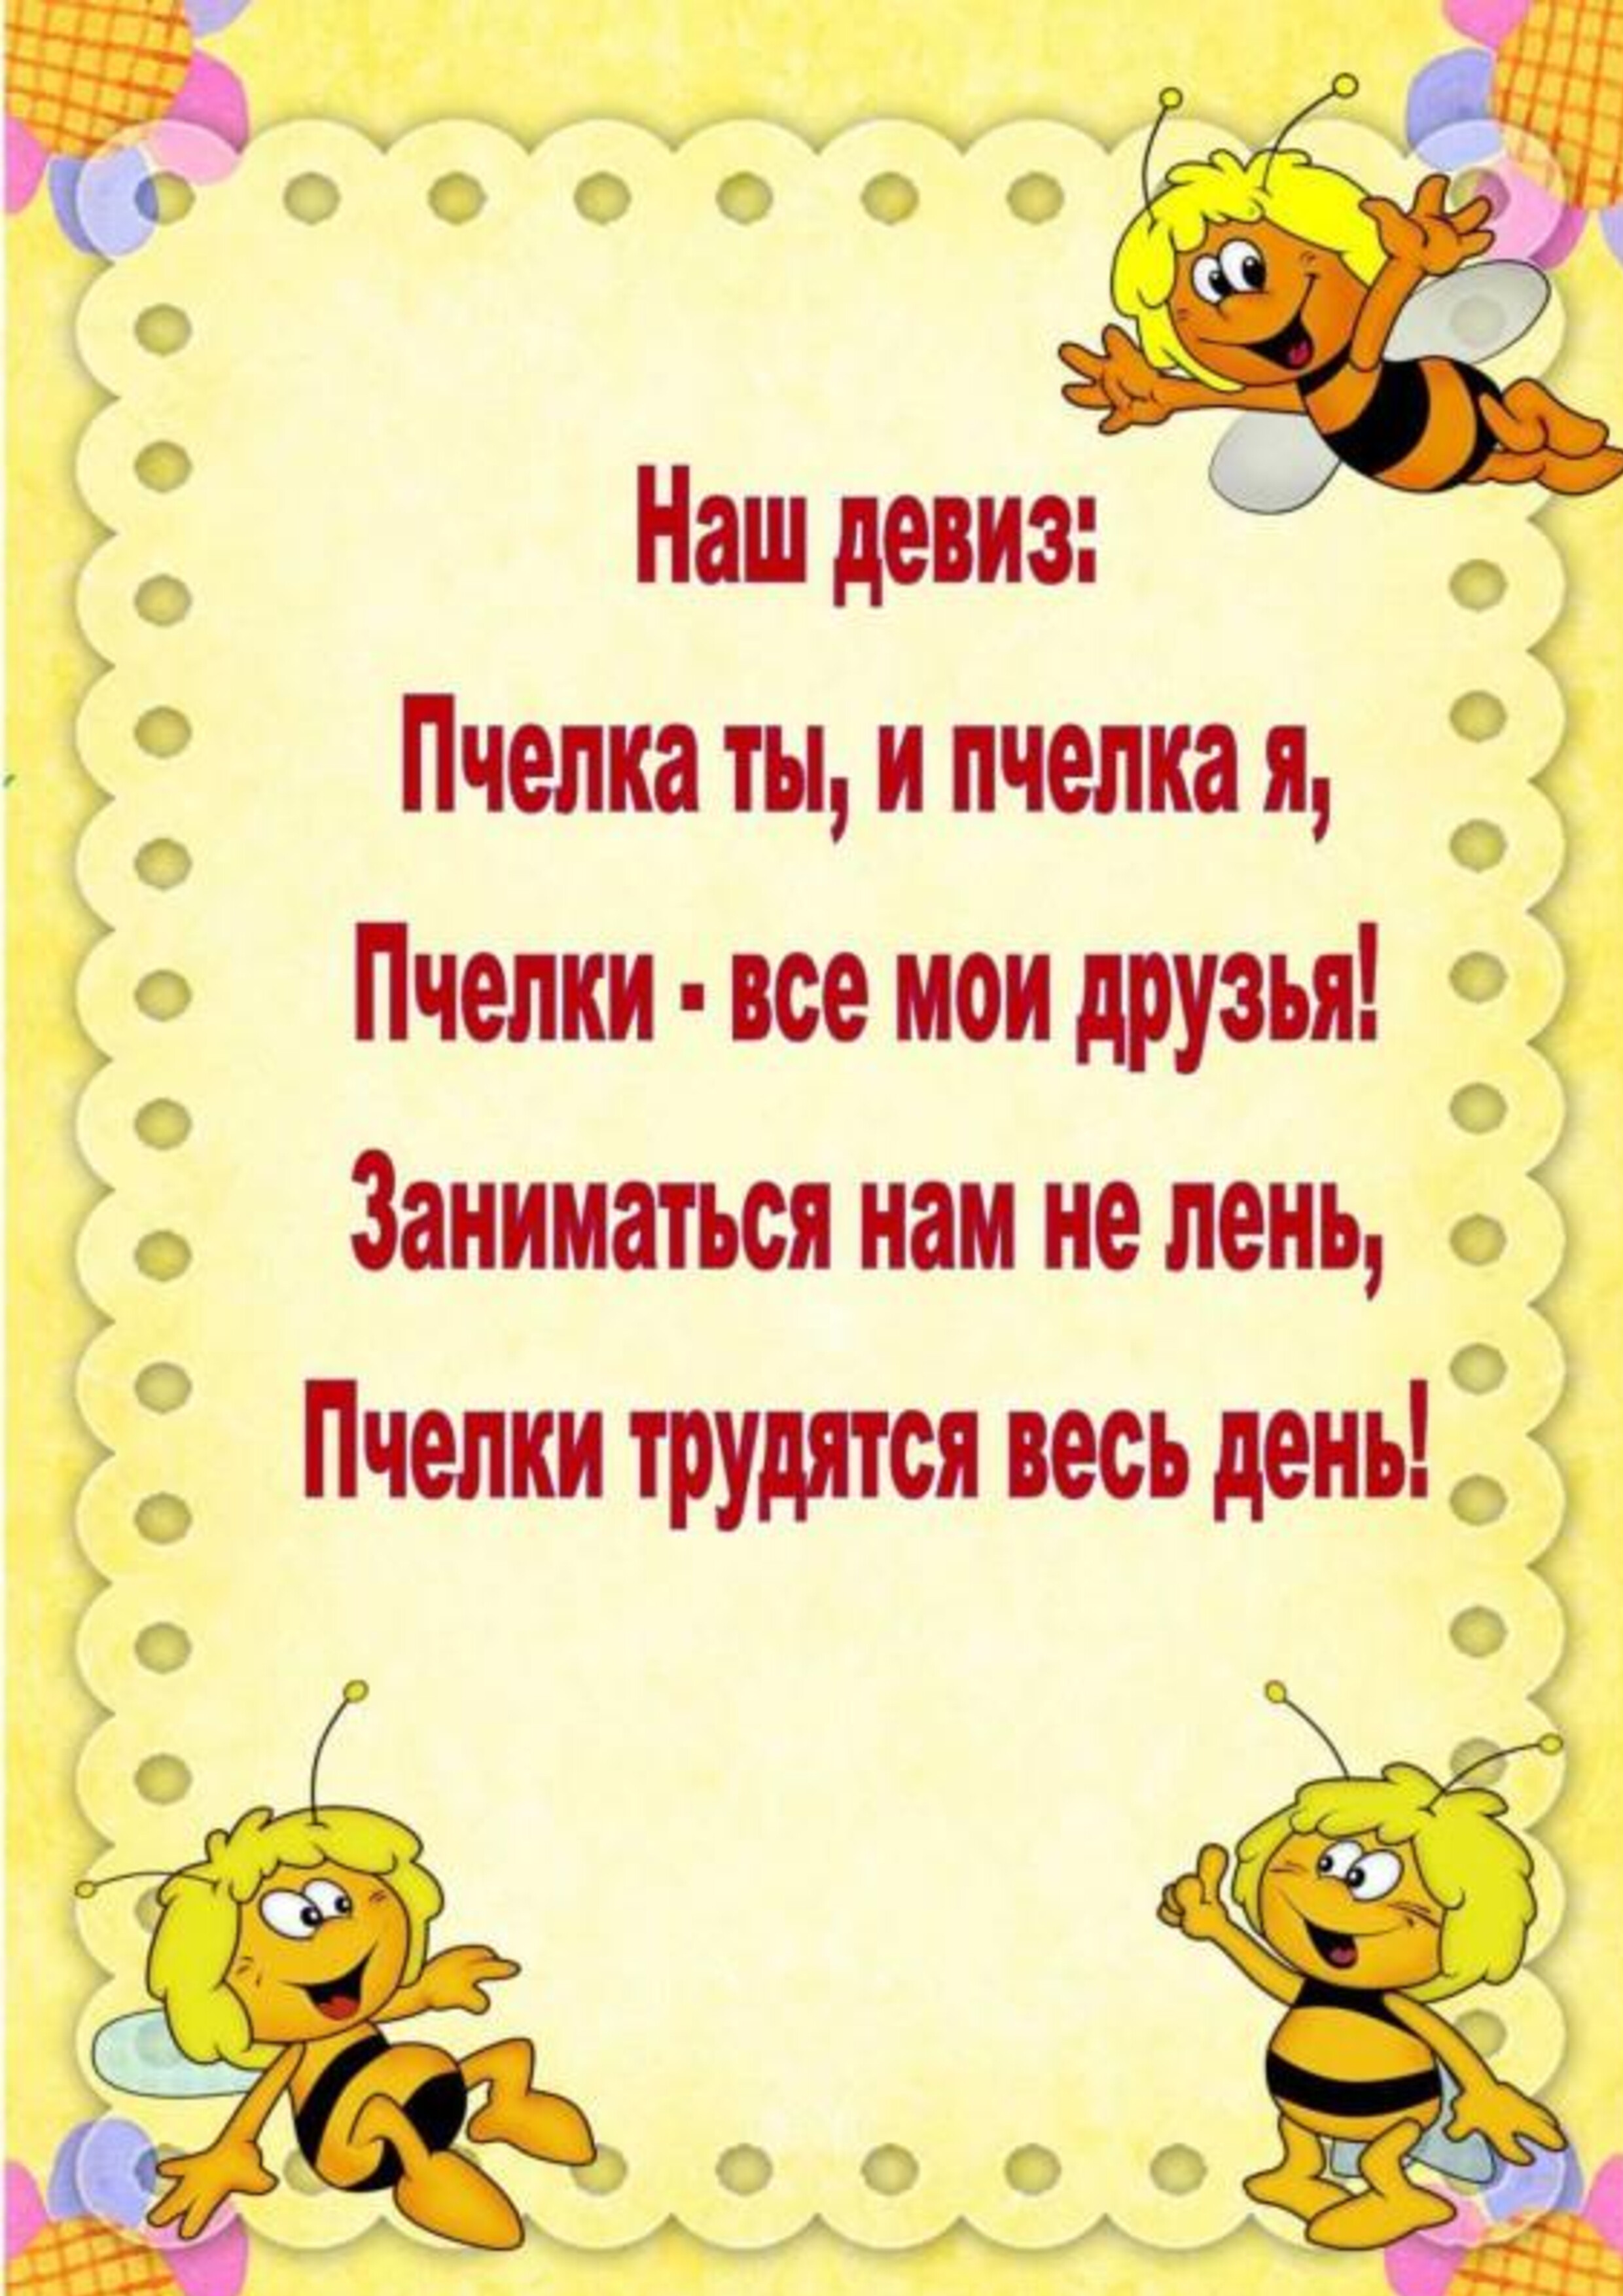 Слоган про детей. Девиз группы пчелки. Девиз пчелки. Группа пчелки в детском саду. Наш девиз пчелки.